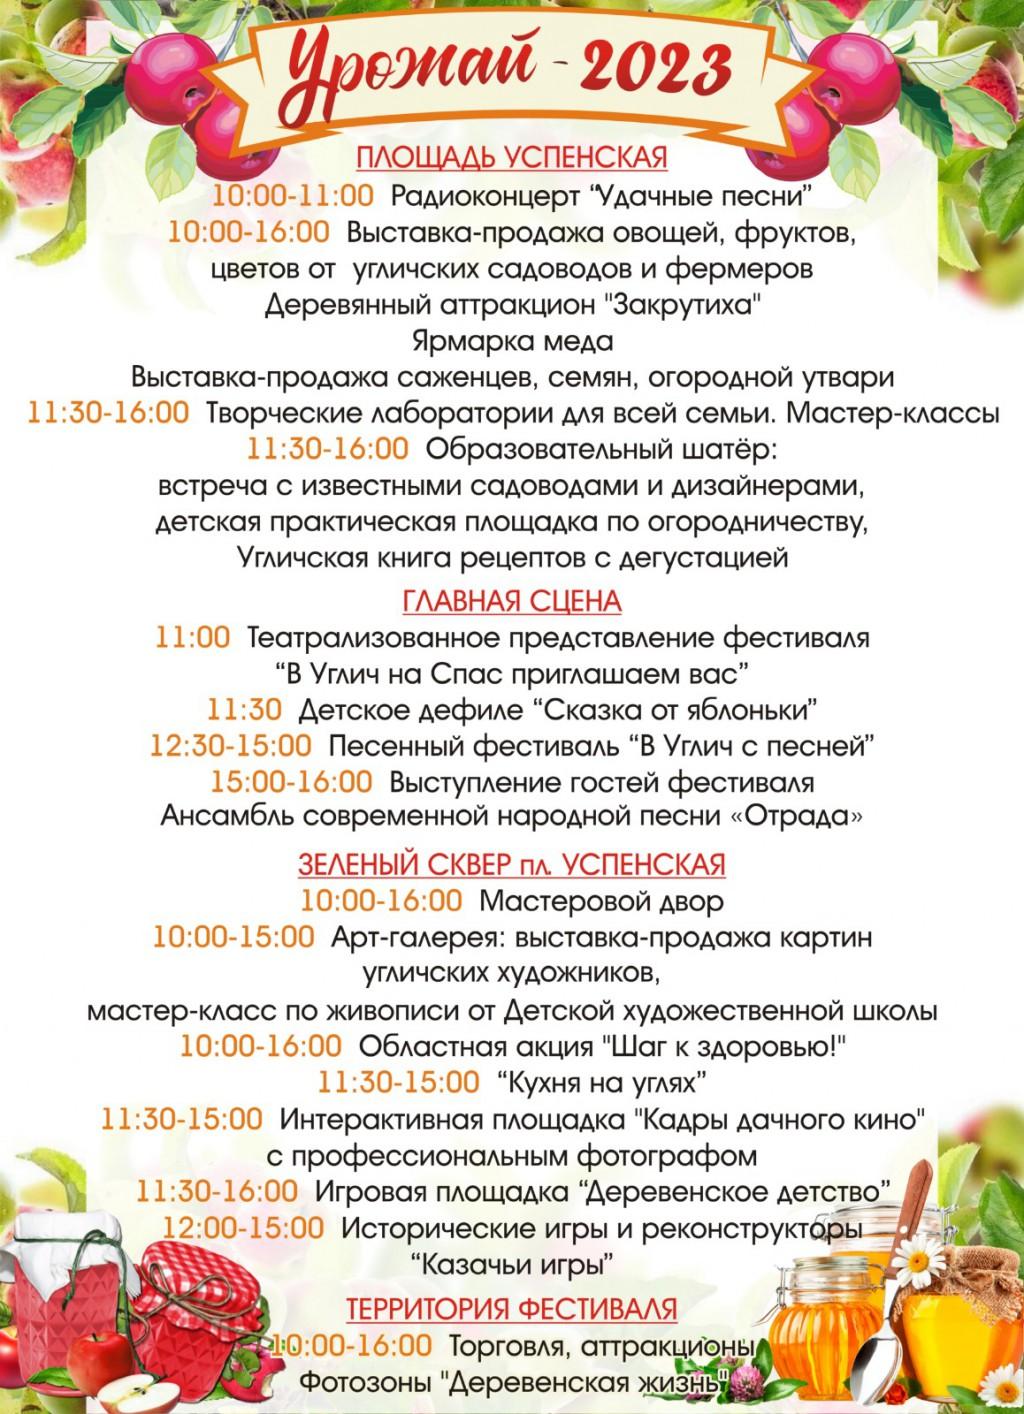 Программа празднования фестиваля "Урожай-2023"